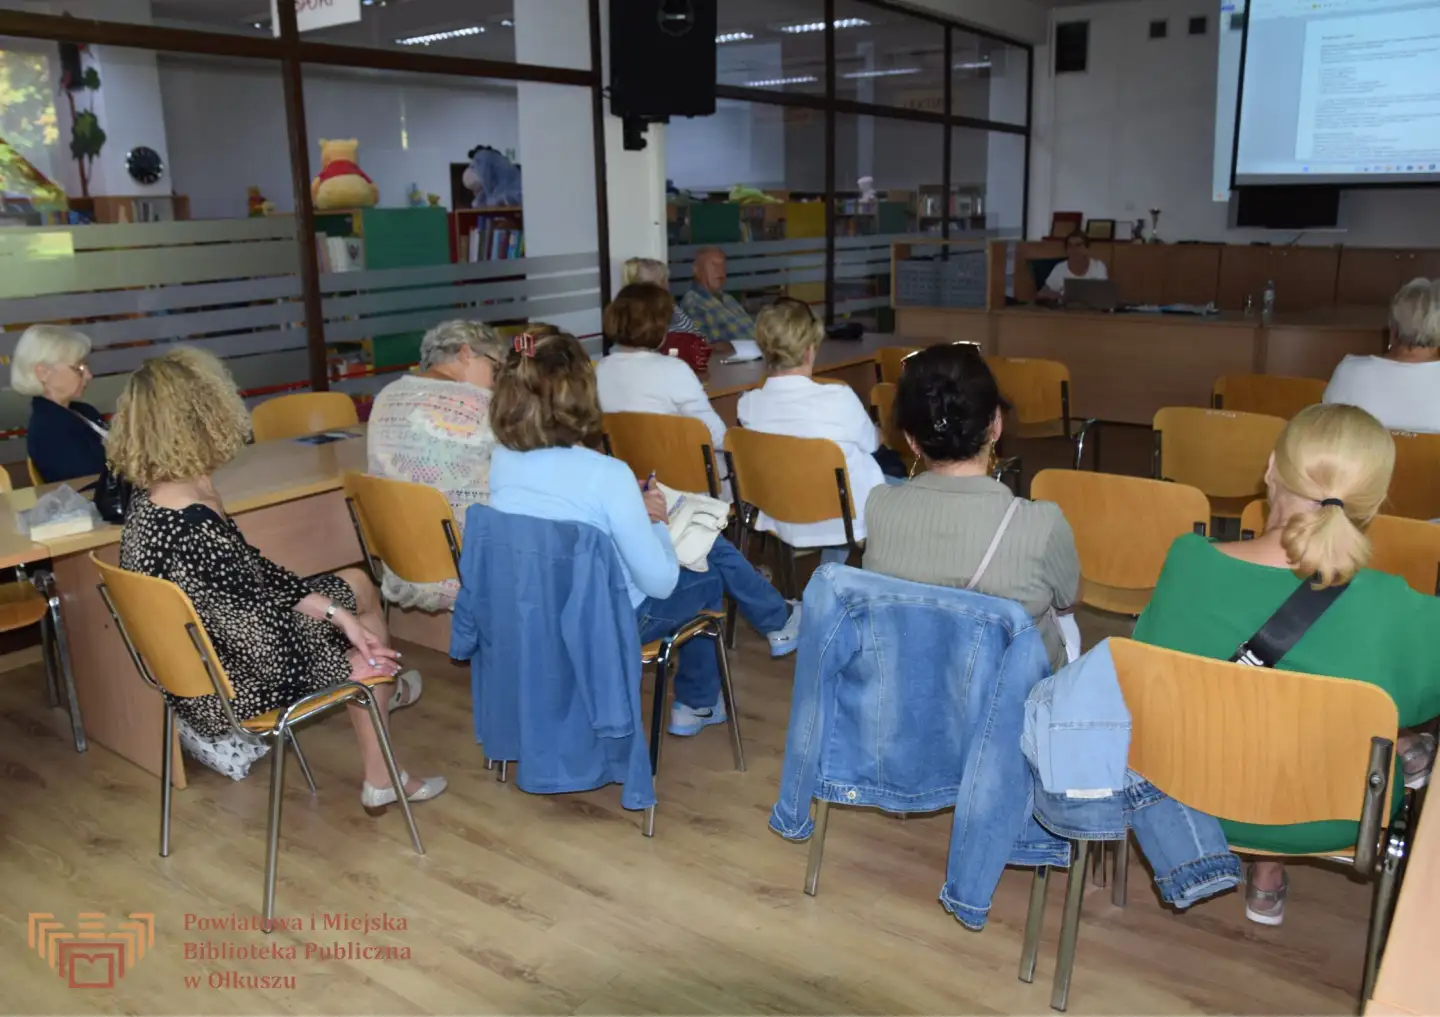 Grupa osób siedząca na krzesłach w sali konferencyjnej w trakcie prezentacji. W tle prezentacja i wypożyczalnia książek dla dzieci